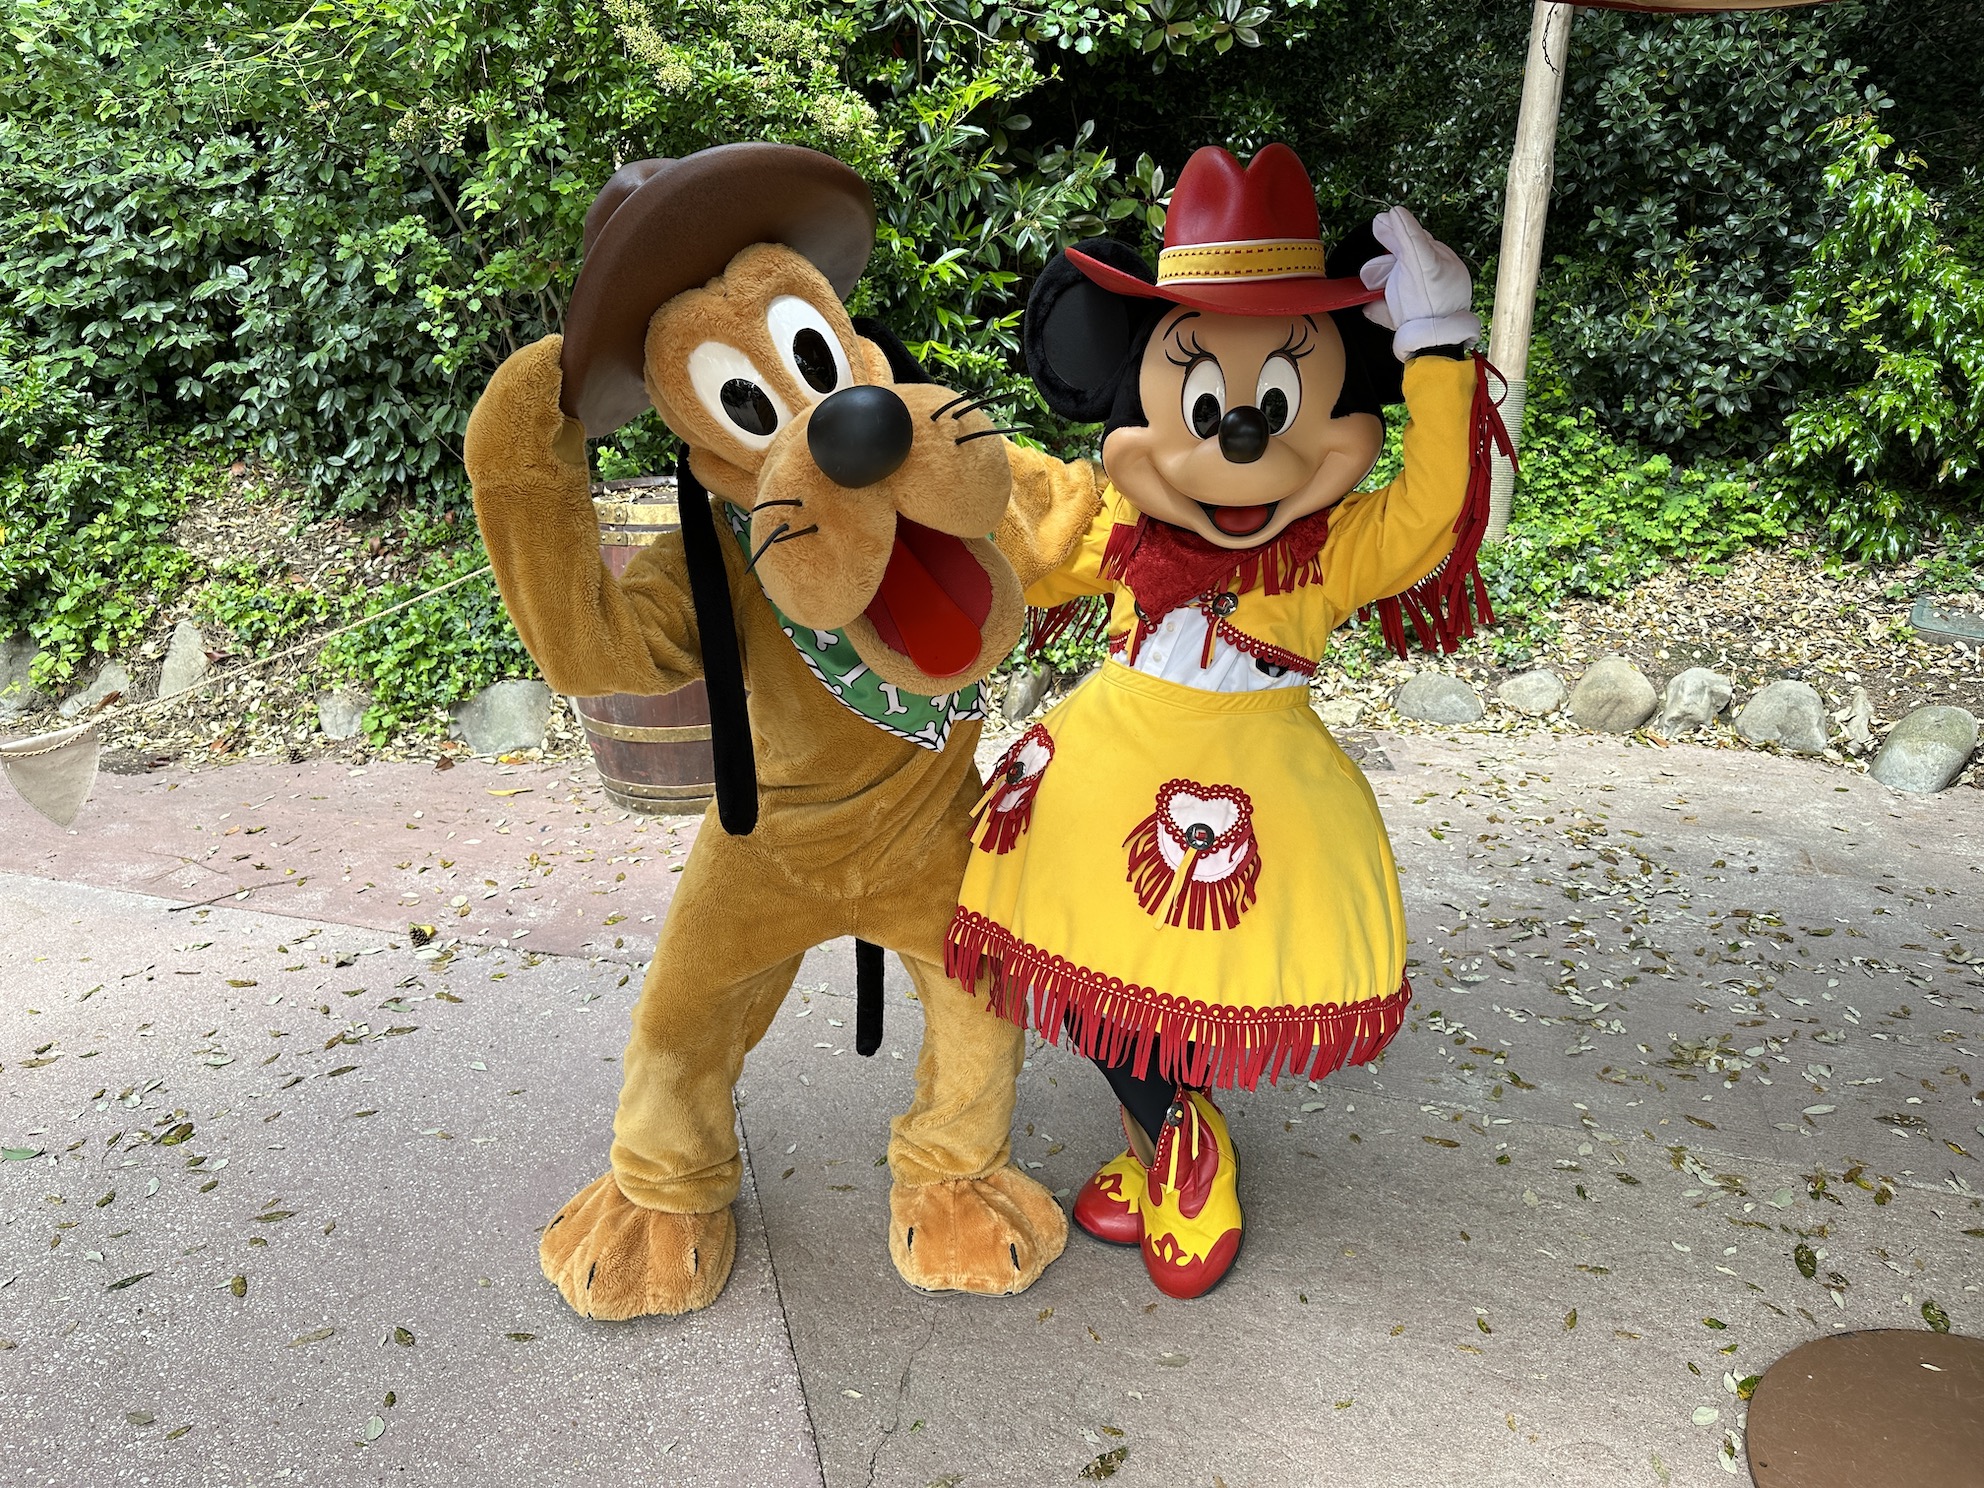 Pluto krijgt gethematiseerde outfit in Frontierland in het Disneyland Park